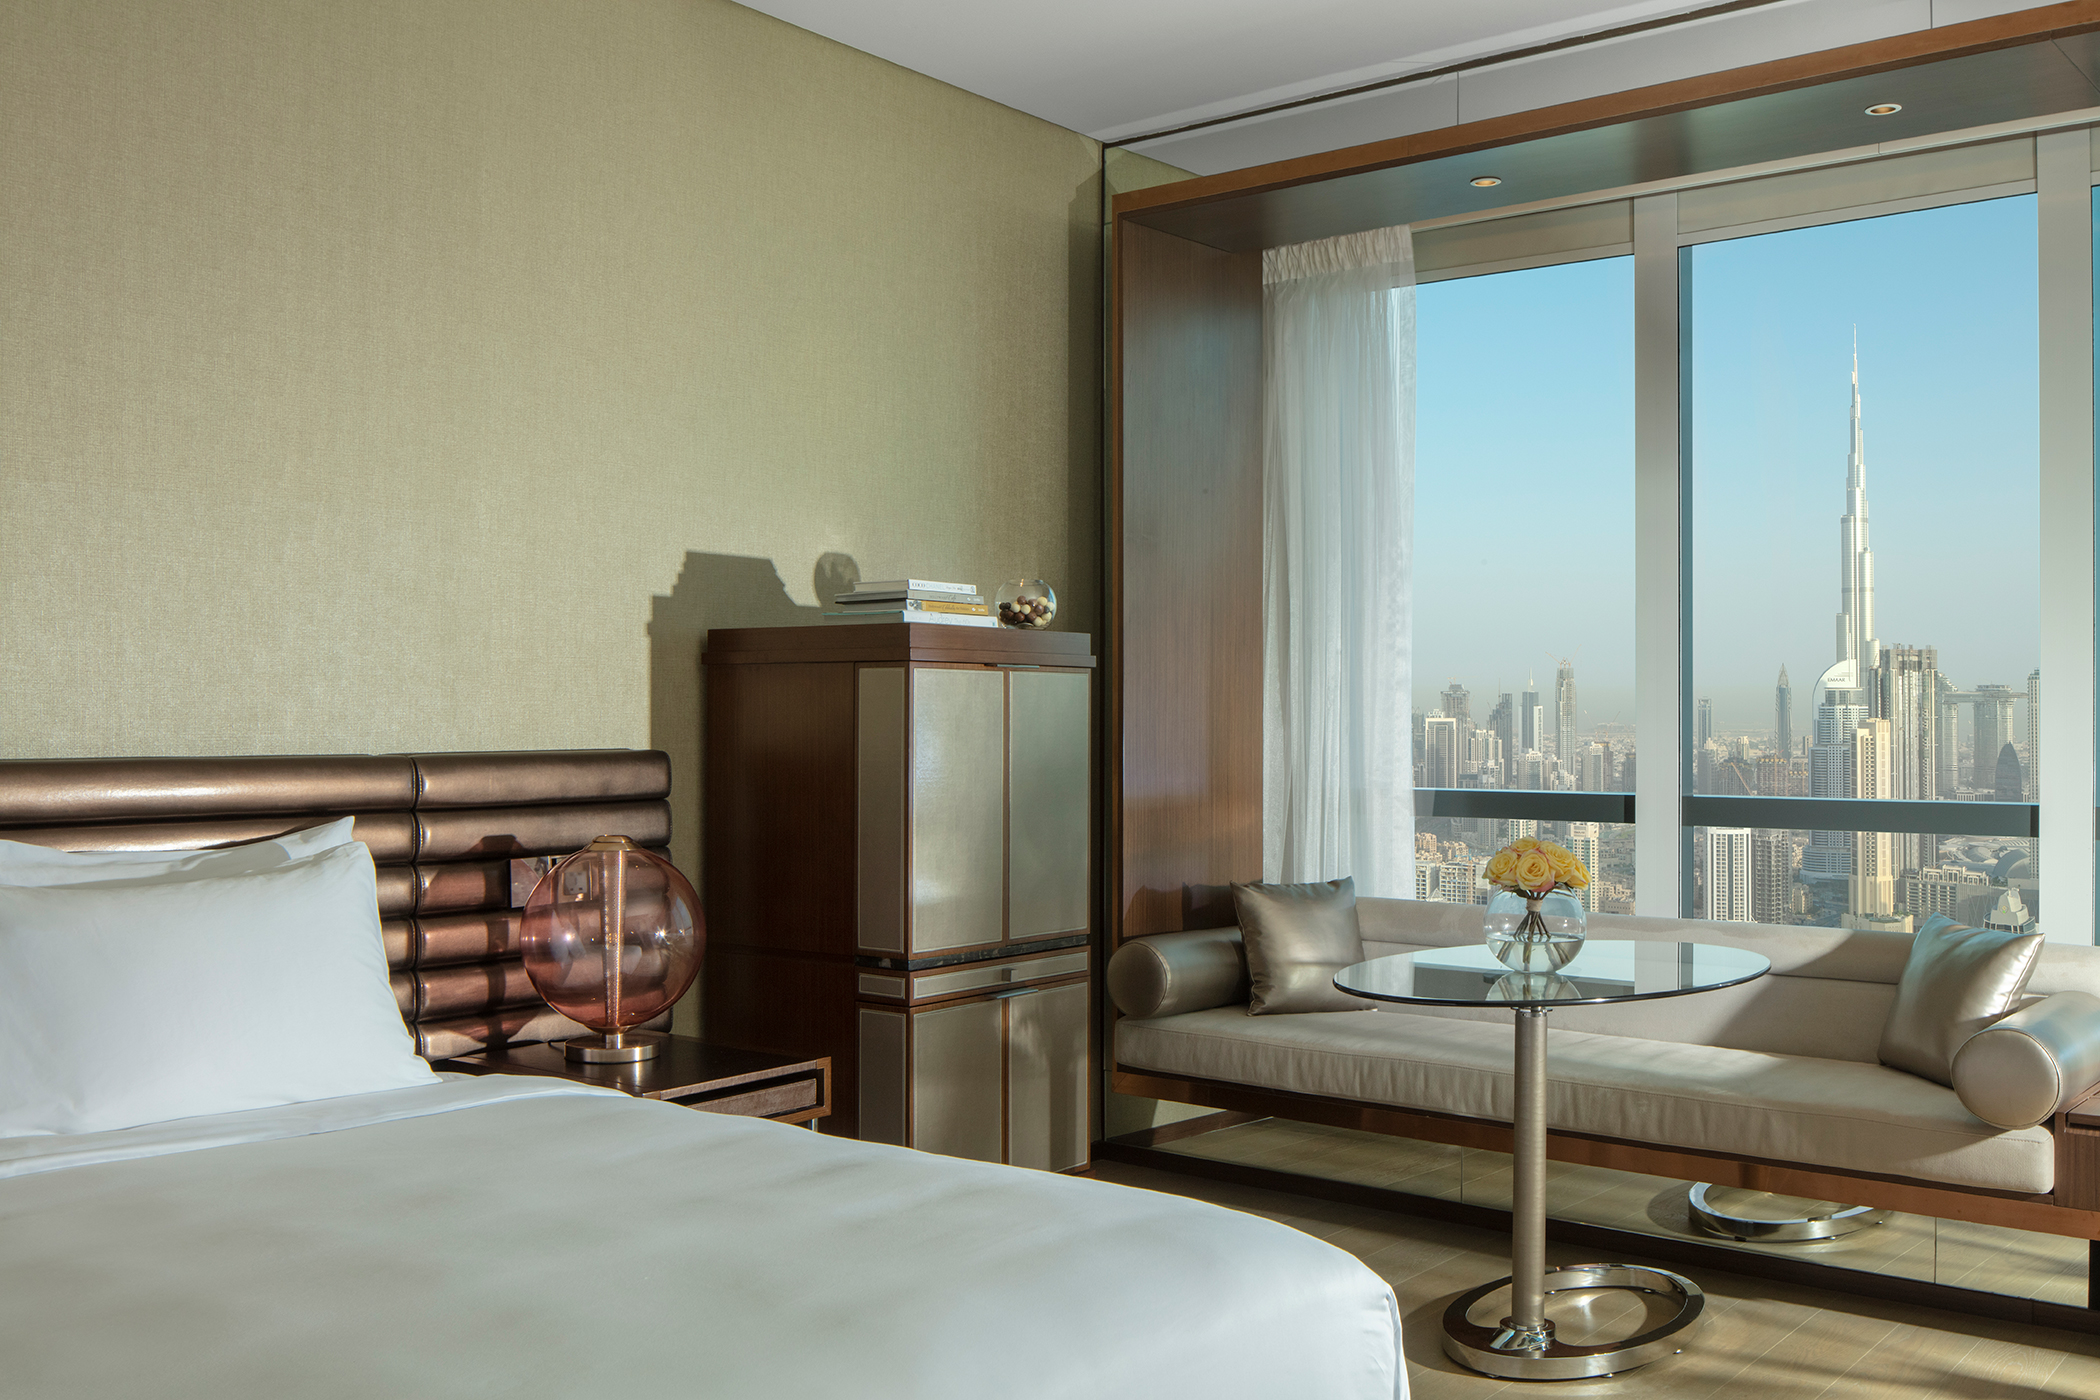 عکس های Hotel Paramount Hotel Dubai